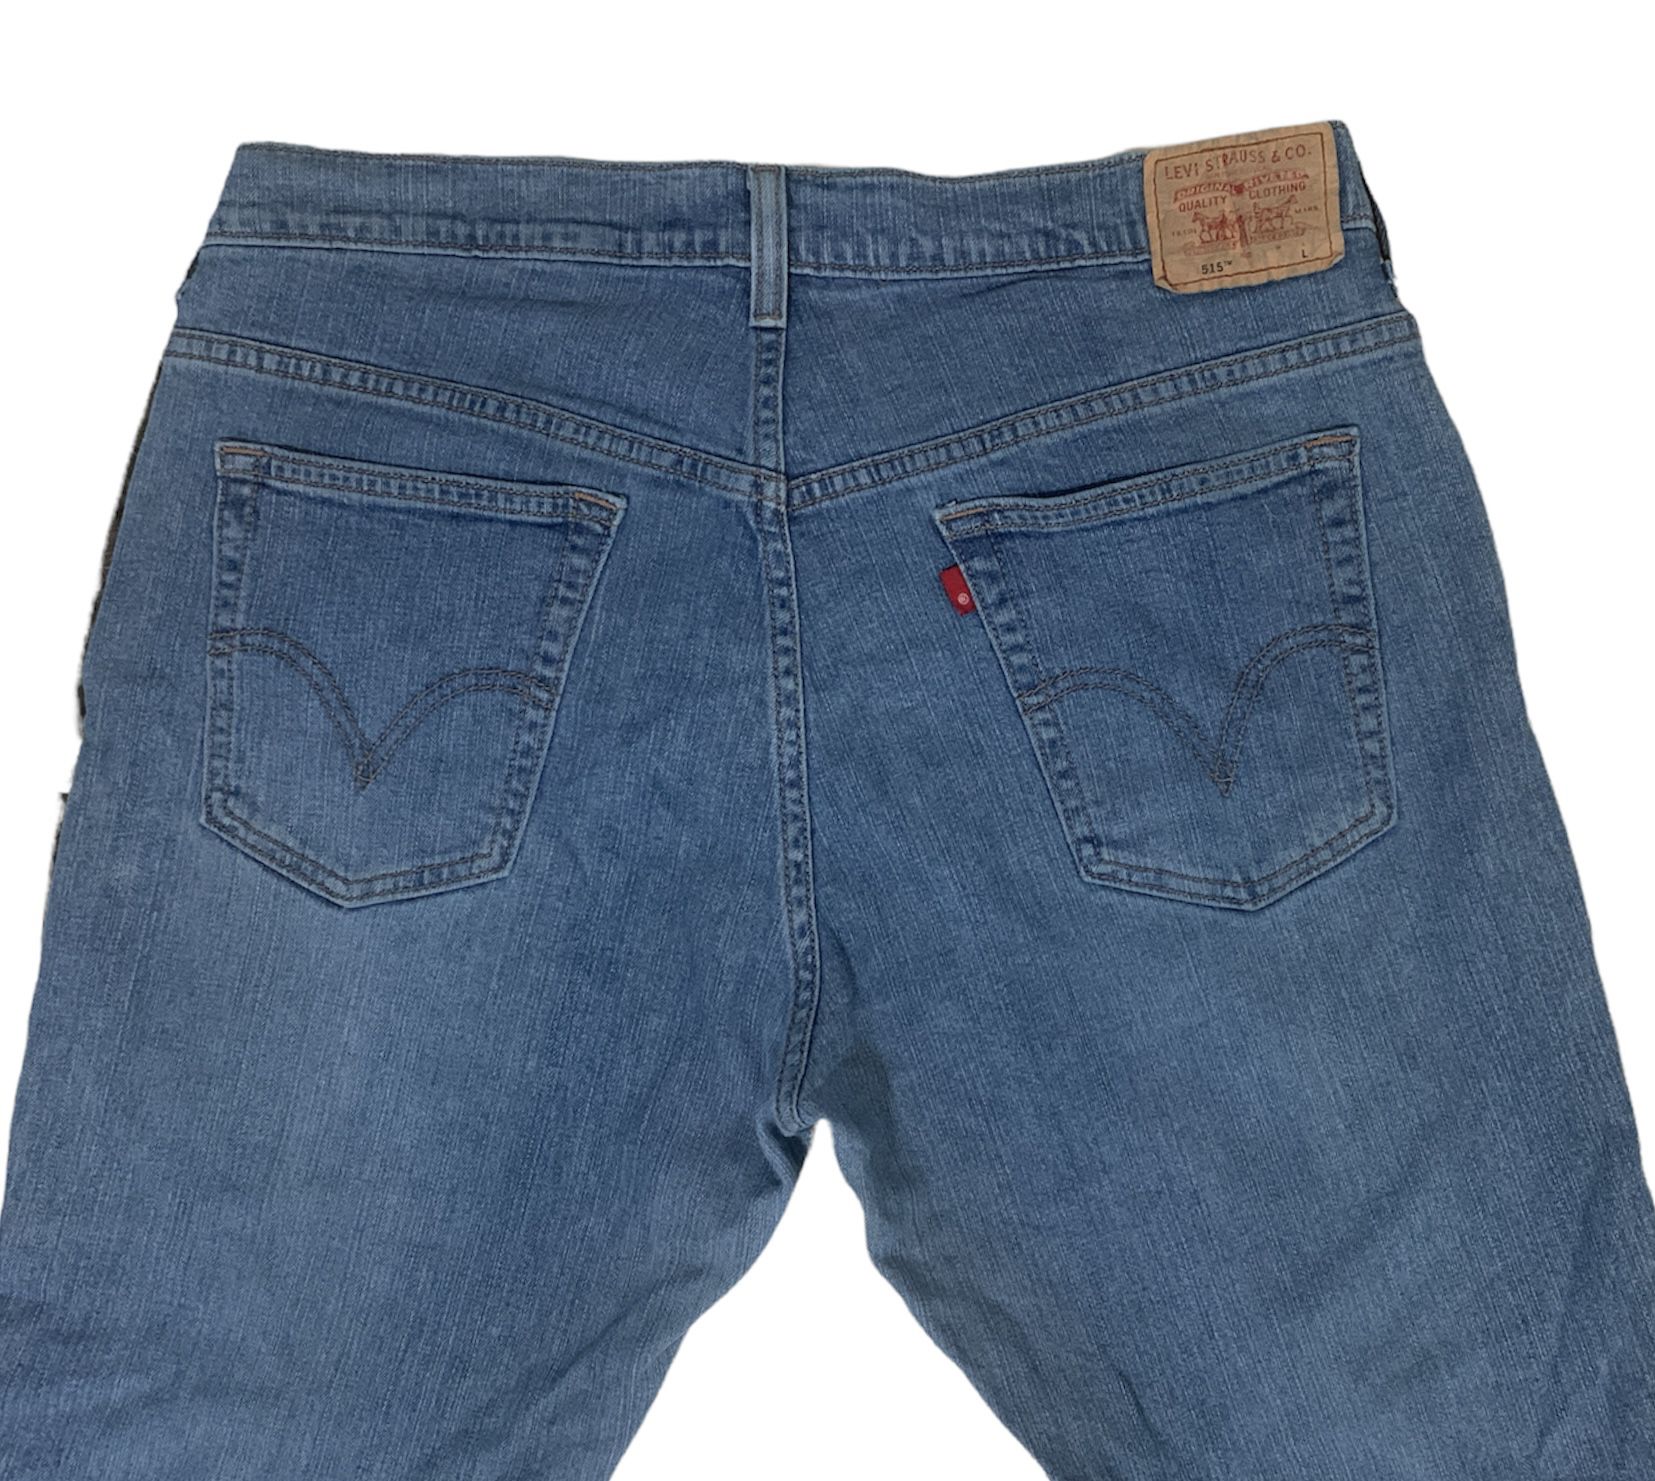 Levi’s 515 Women’s Nouveau Bootcut Jeans Size 14L